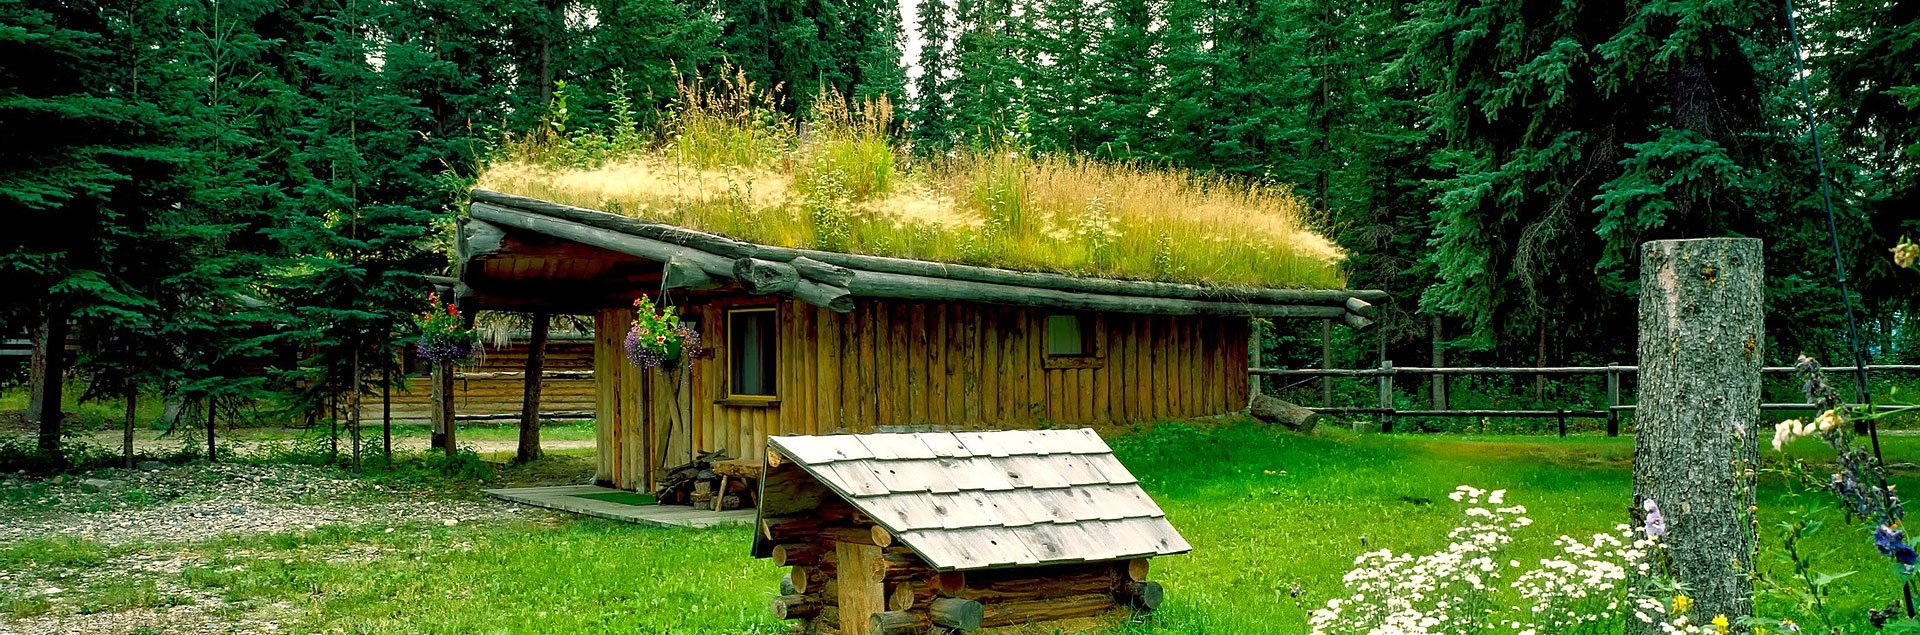 rustic Alaskan cabin